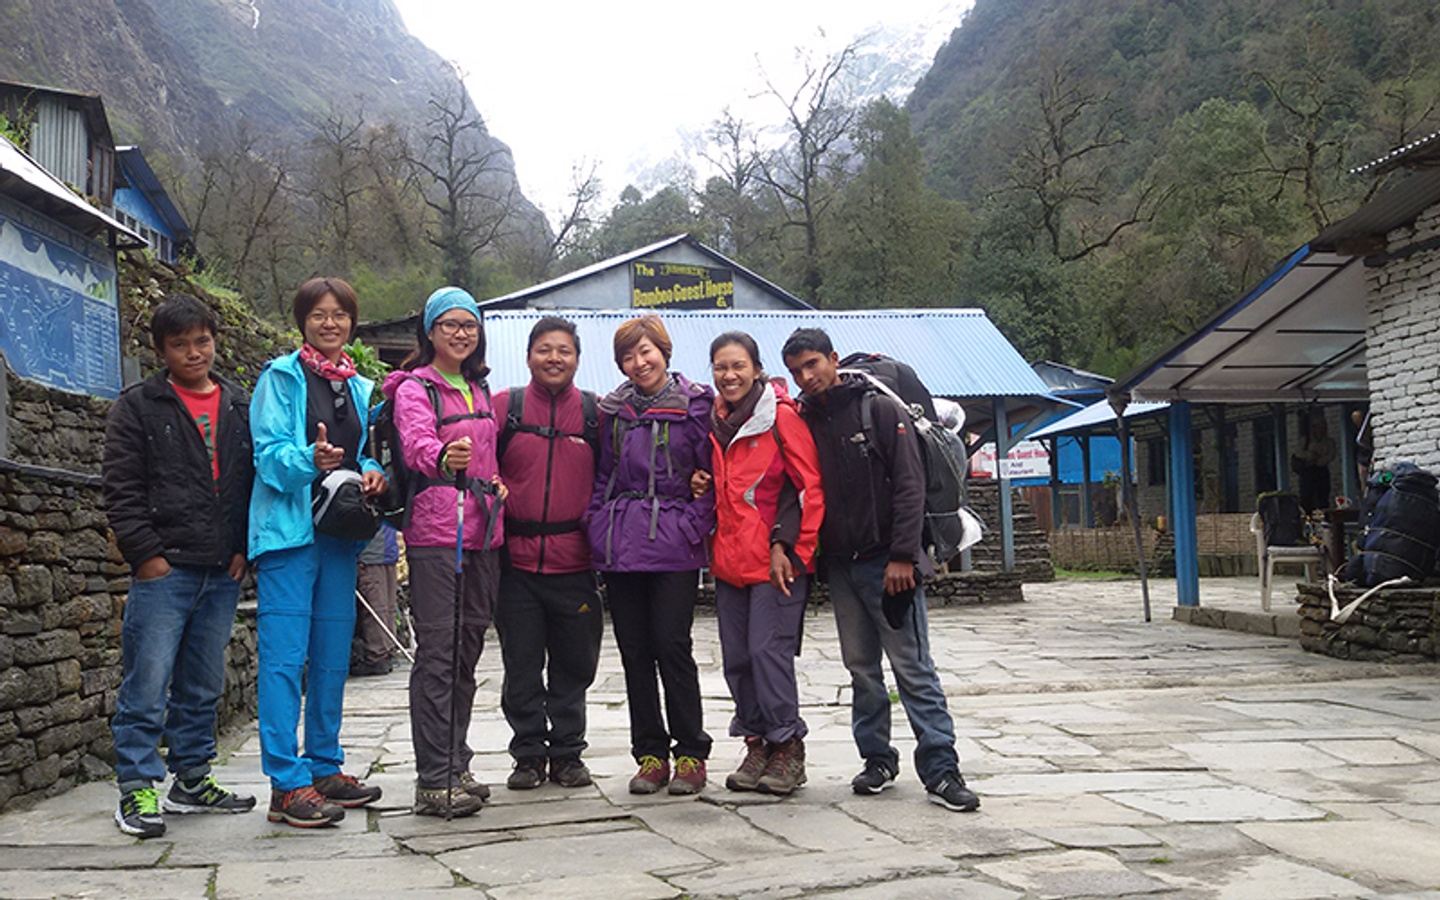 Annapurna Base Camp Trek 5 Days